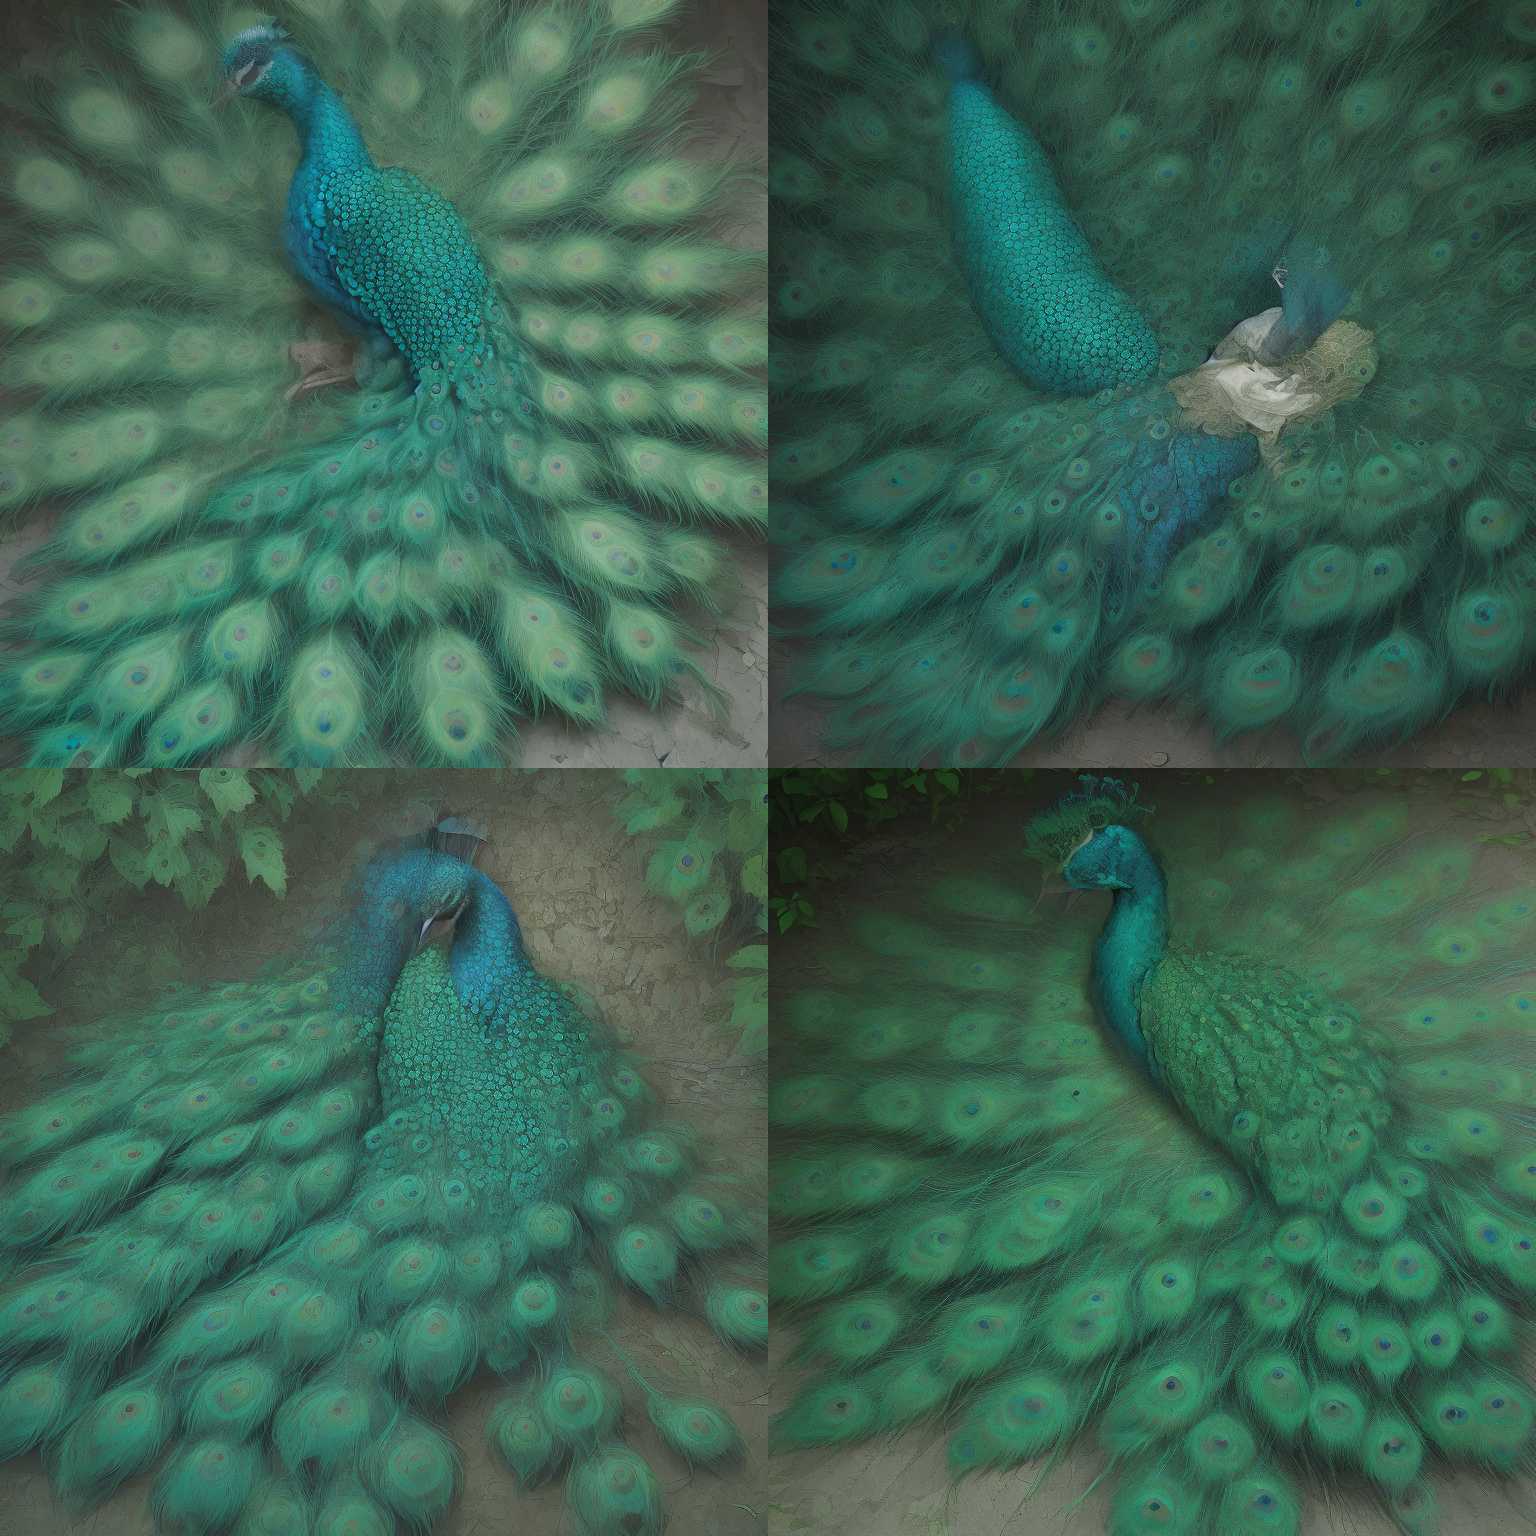 A peacock sleeping